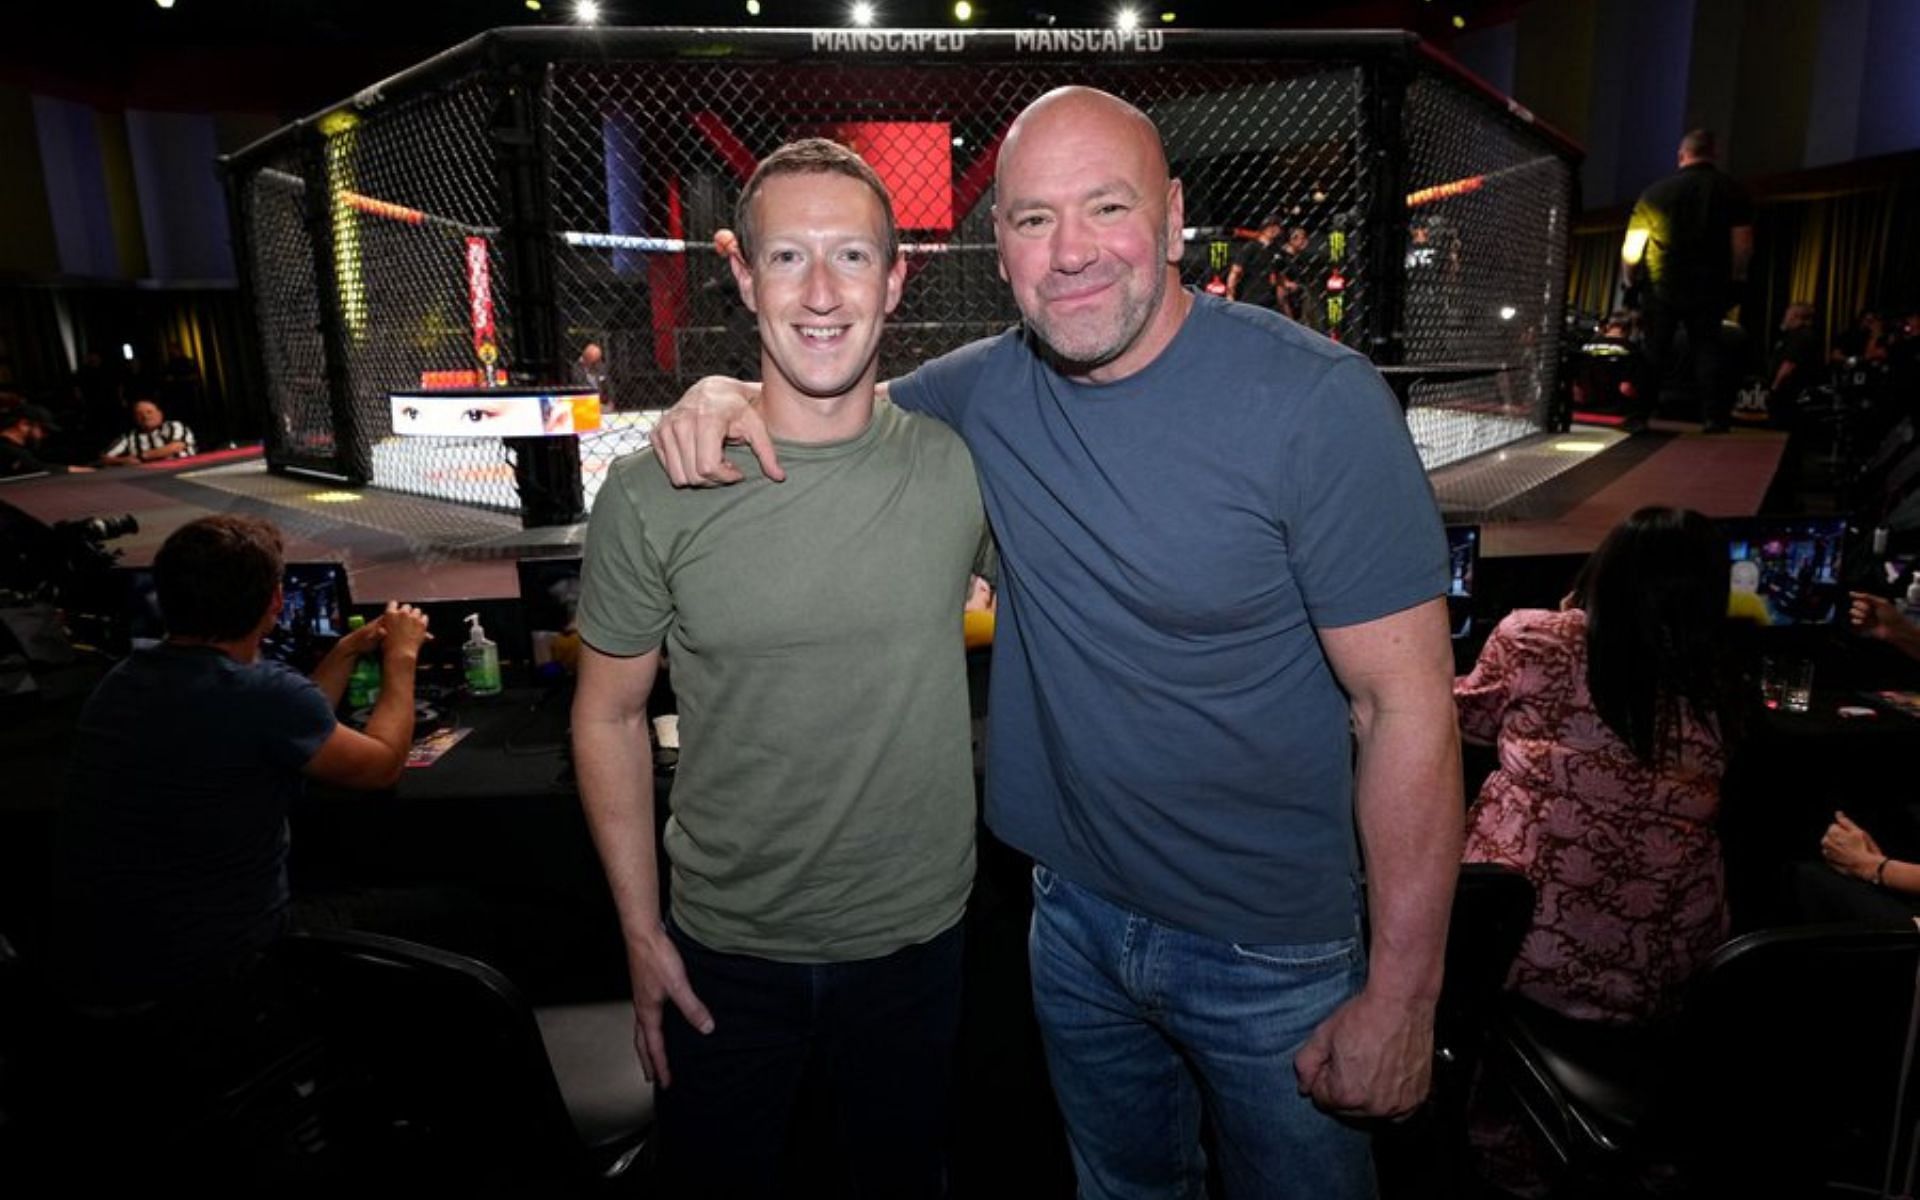 Mark Zuckerberg (left) and Dana White (right) (Image credits @MMAFighting on Twitter)